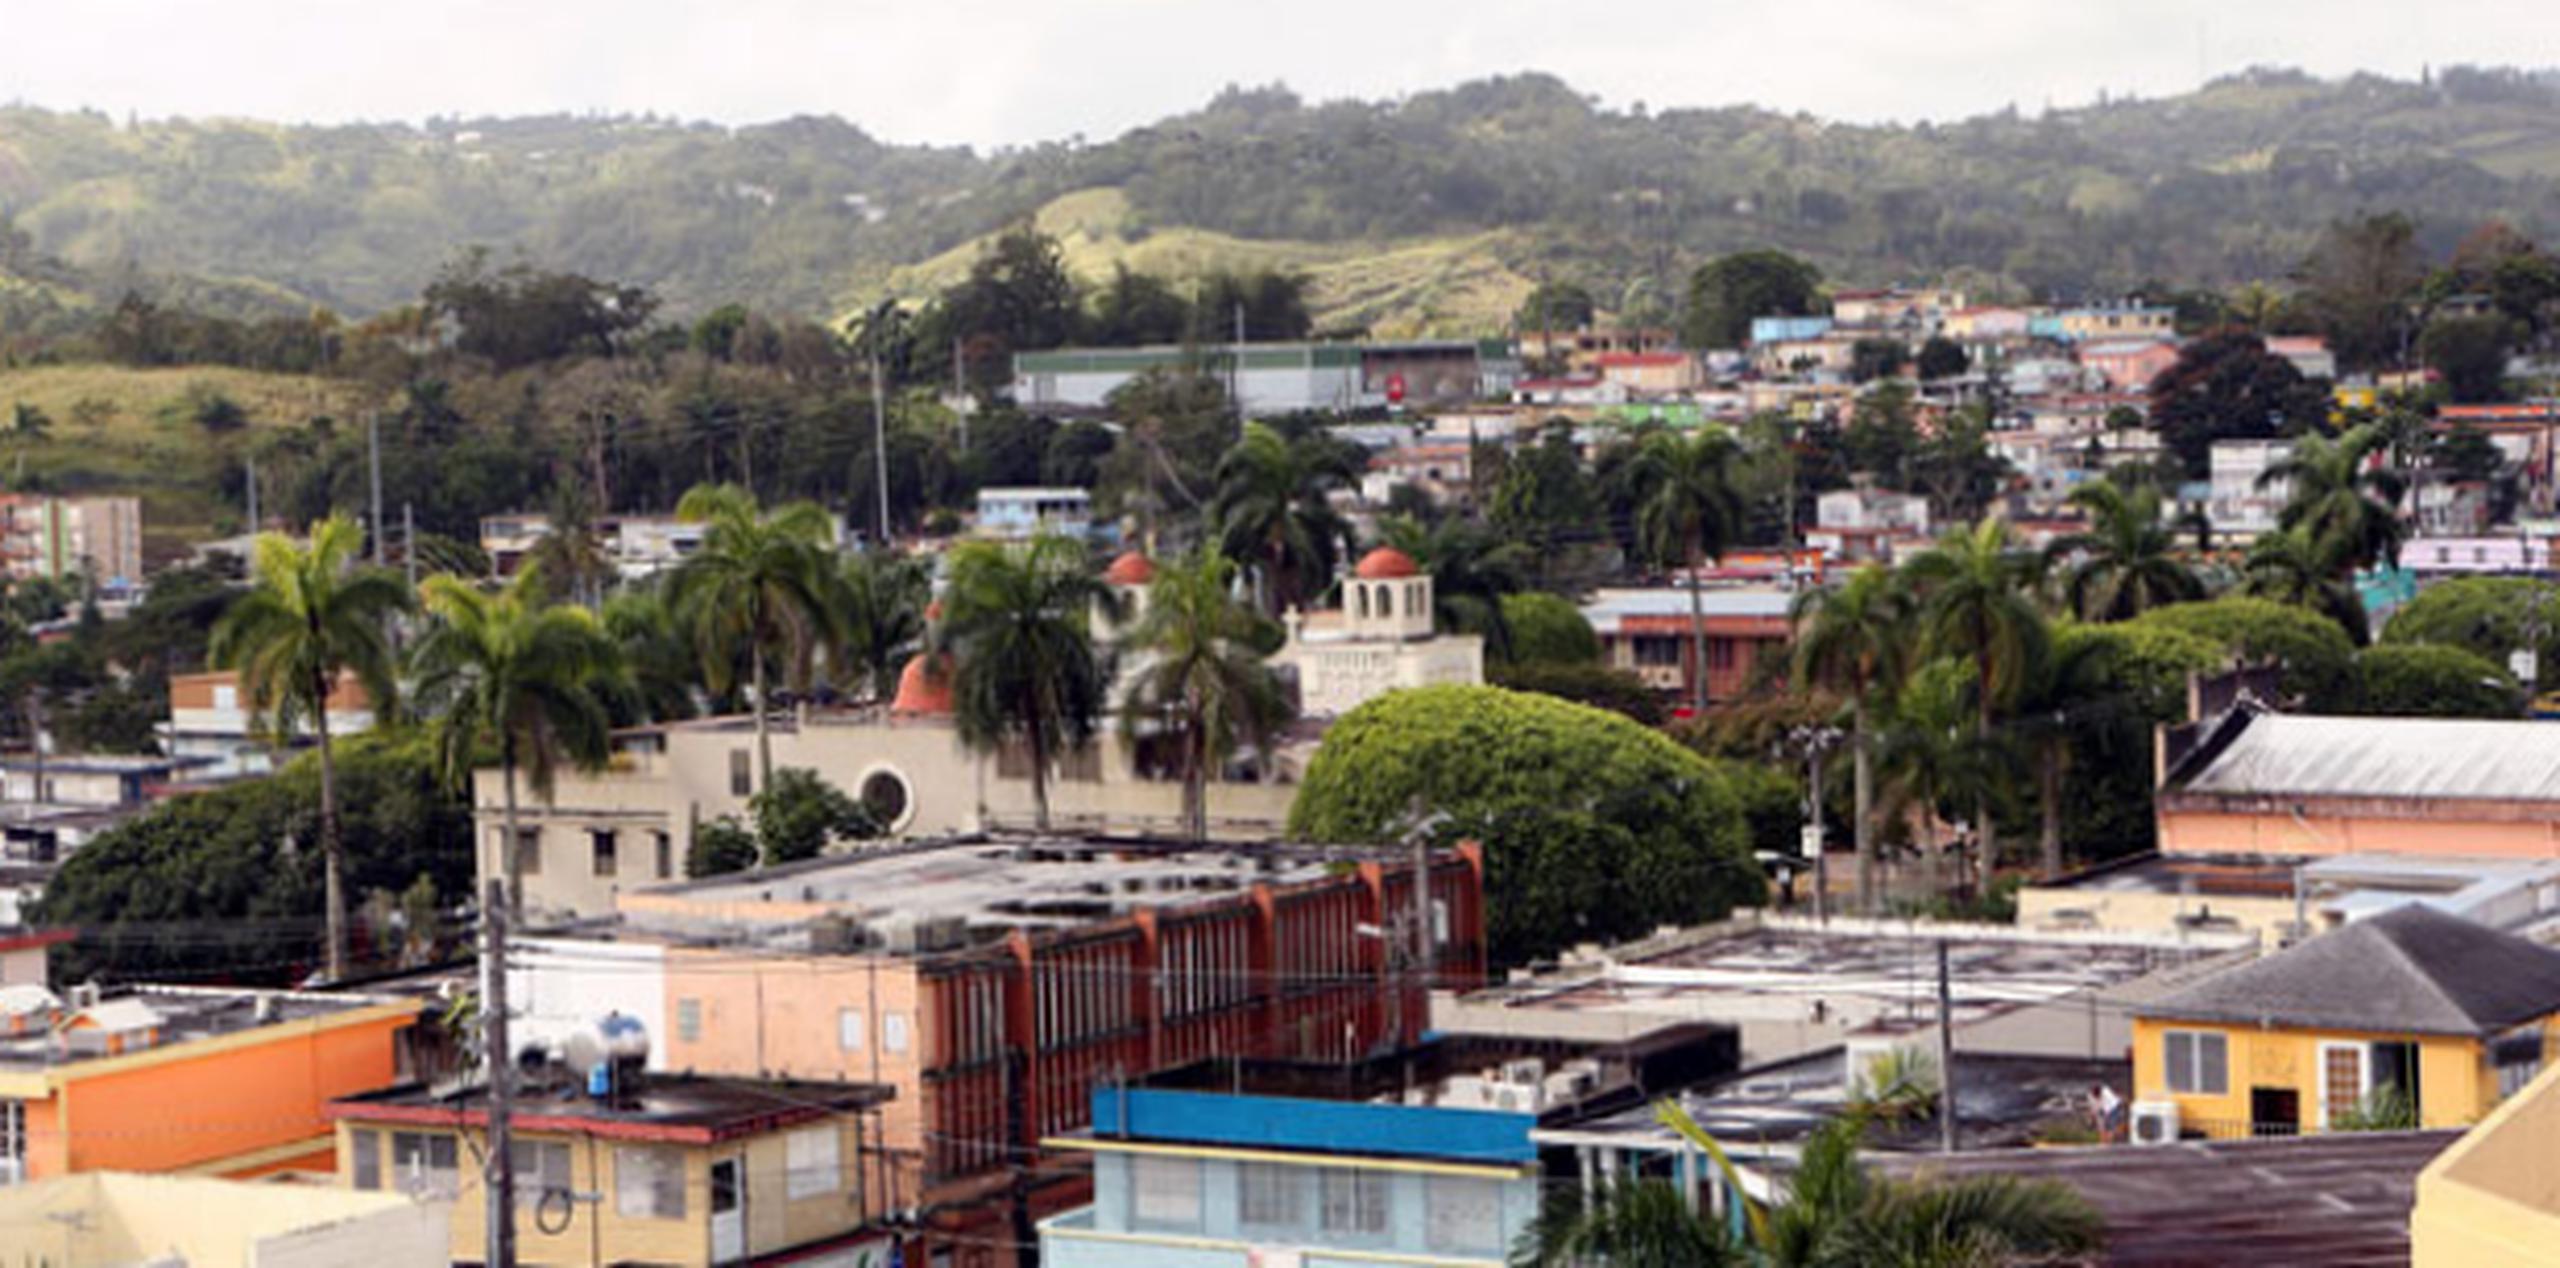 Ambos presuntamente hirieron de bala a una mujer mientras transitaba por la calle Luis Muñoz Rivera, cerca de la plaza de recreo en Caguas.(Archivo)